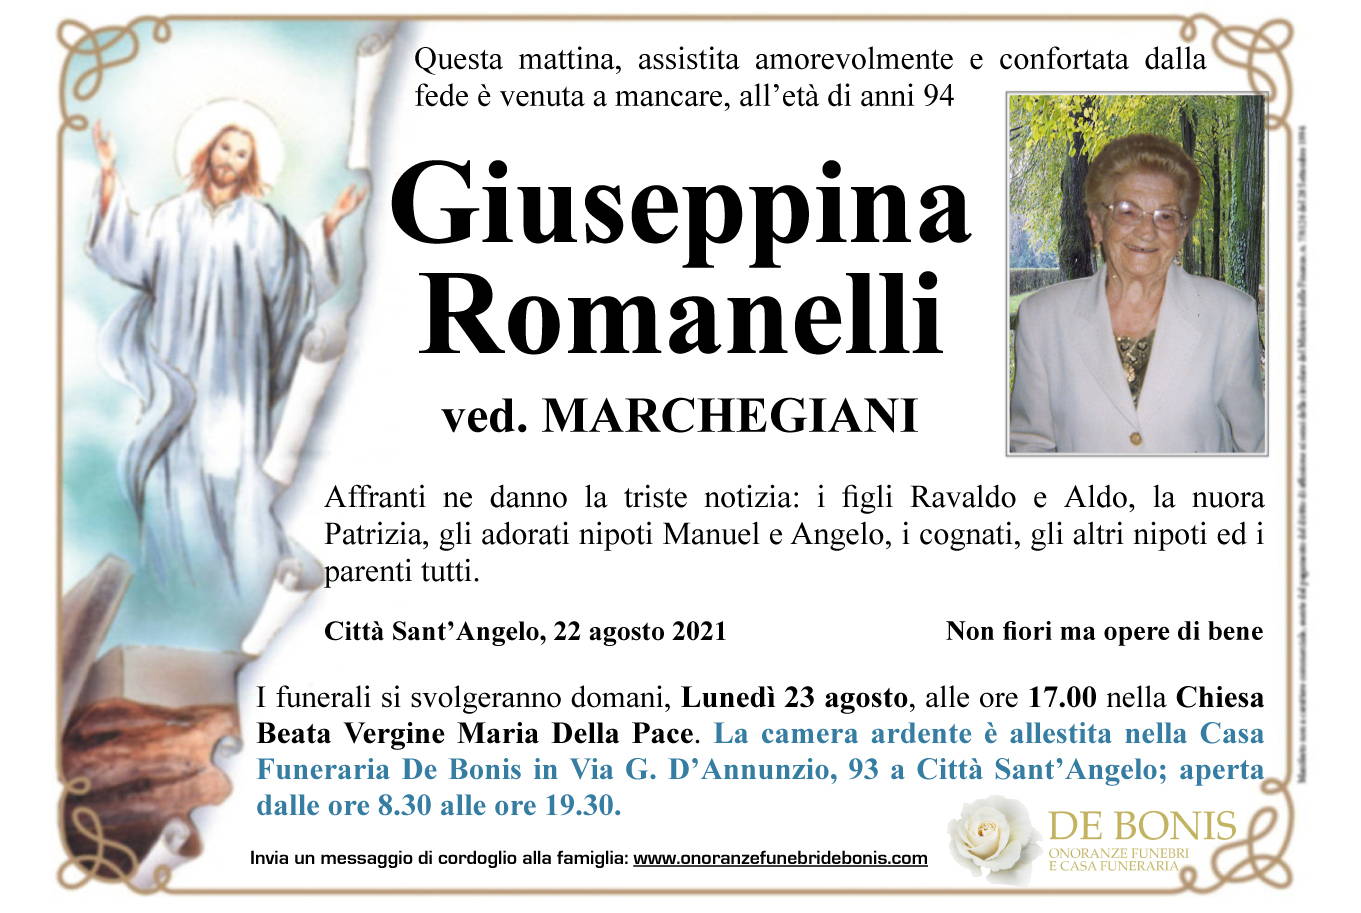 Giuseppina Romanelli